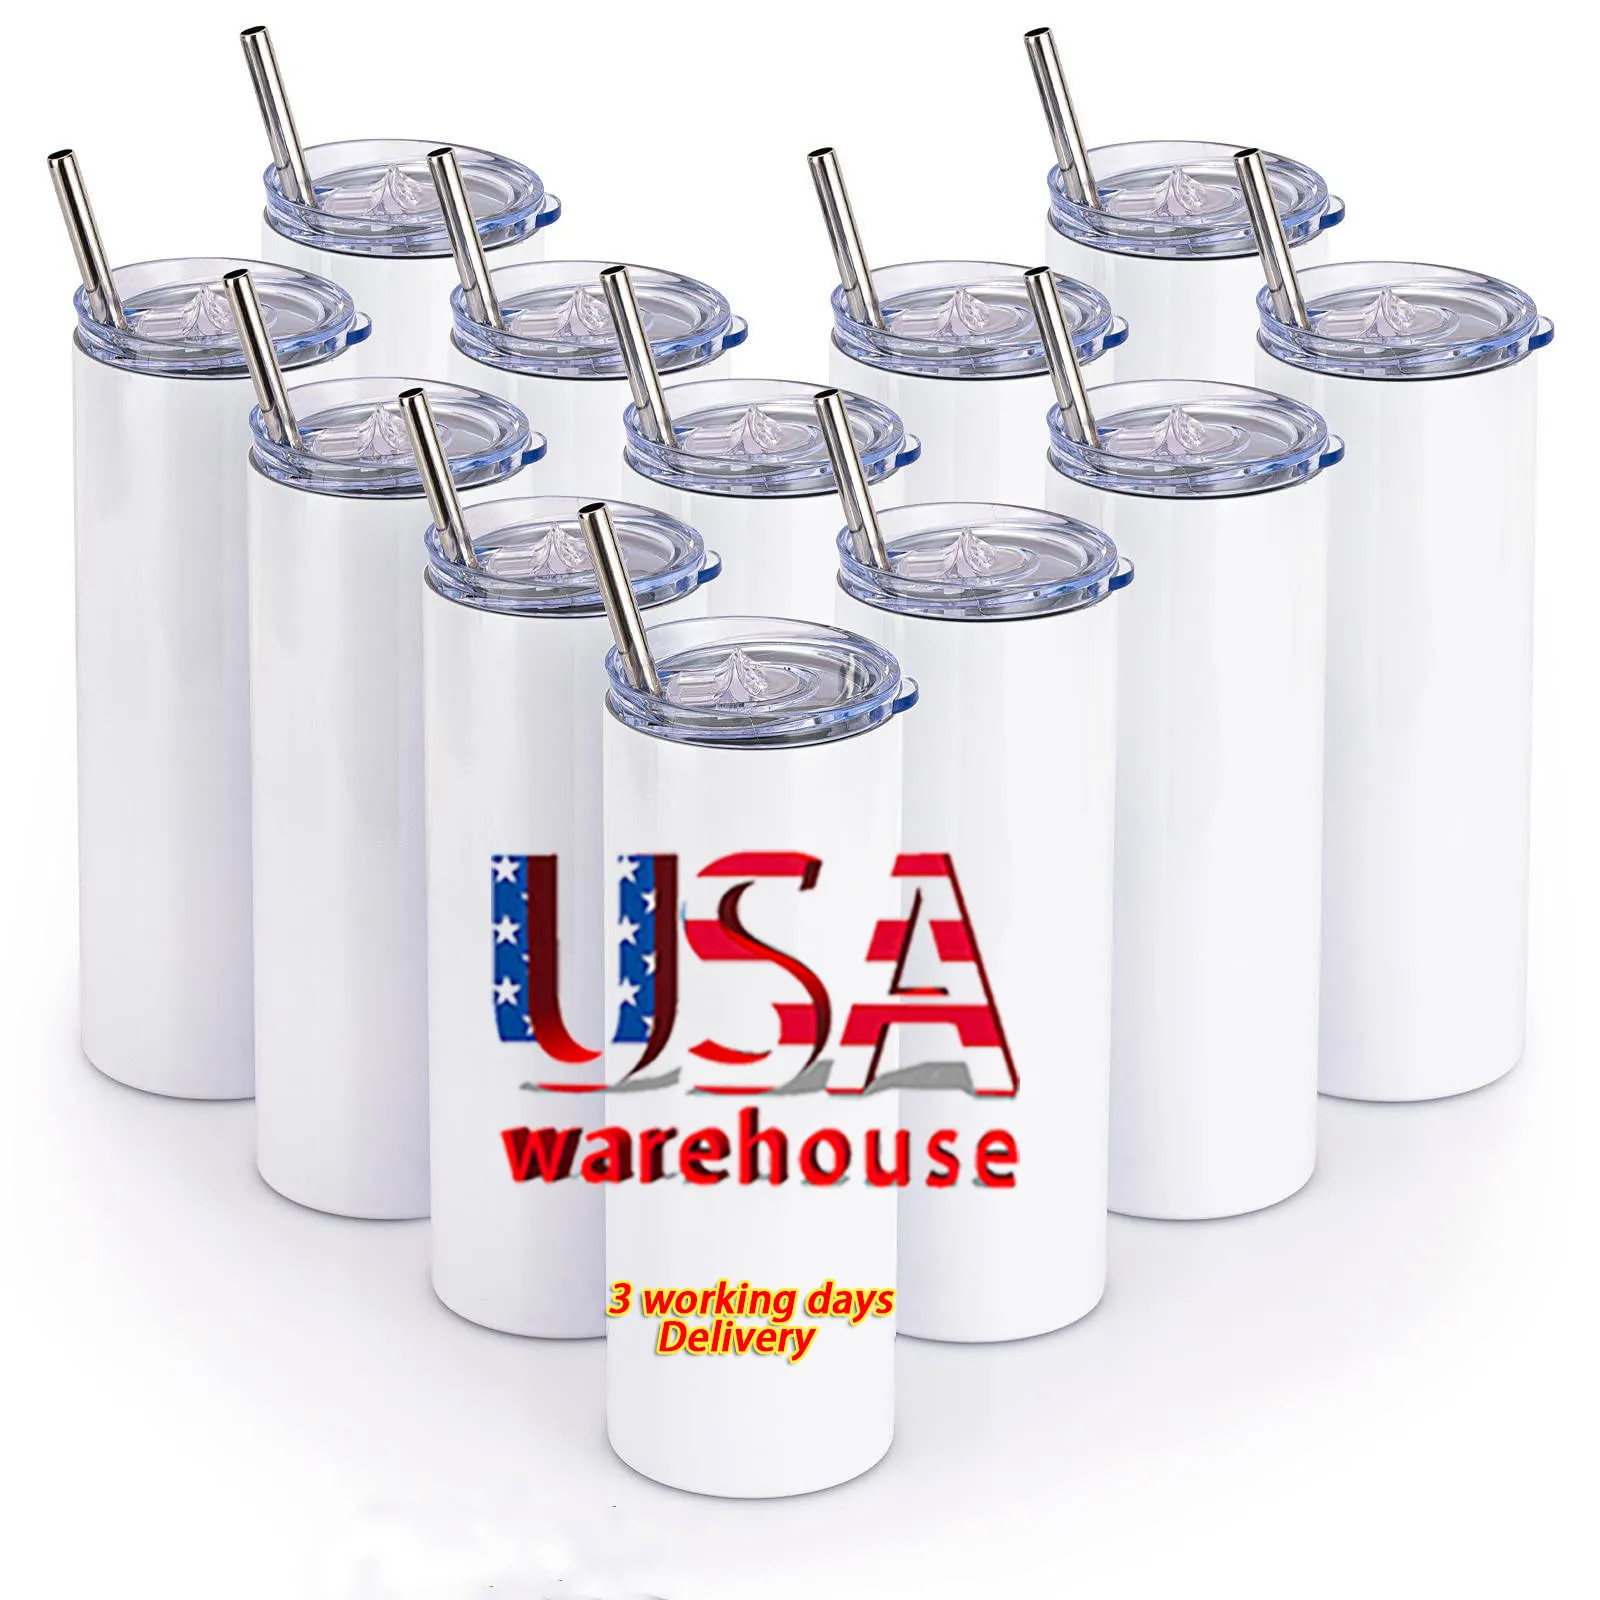 Склад в США, Калифорния, пустые стаканы для сублимации из нержавеющей стали на 20 унций, прямой белый тонкий стакан с соломинкой и крышкой, оптовая продажа, 913